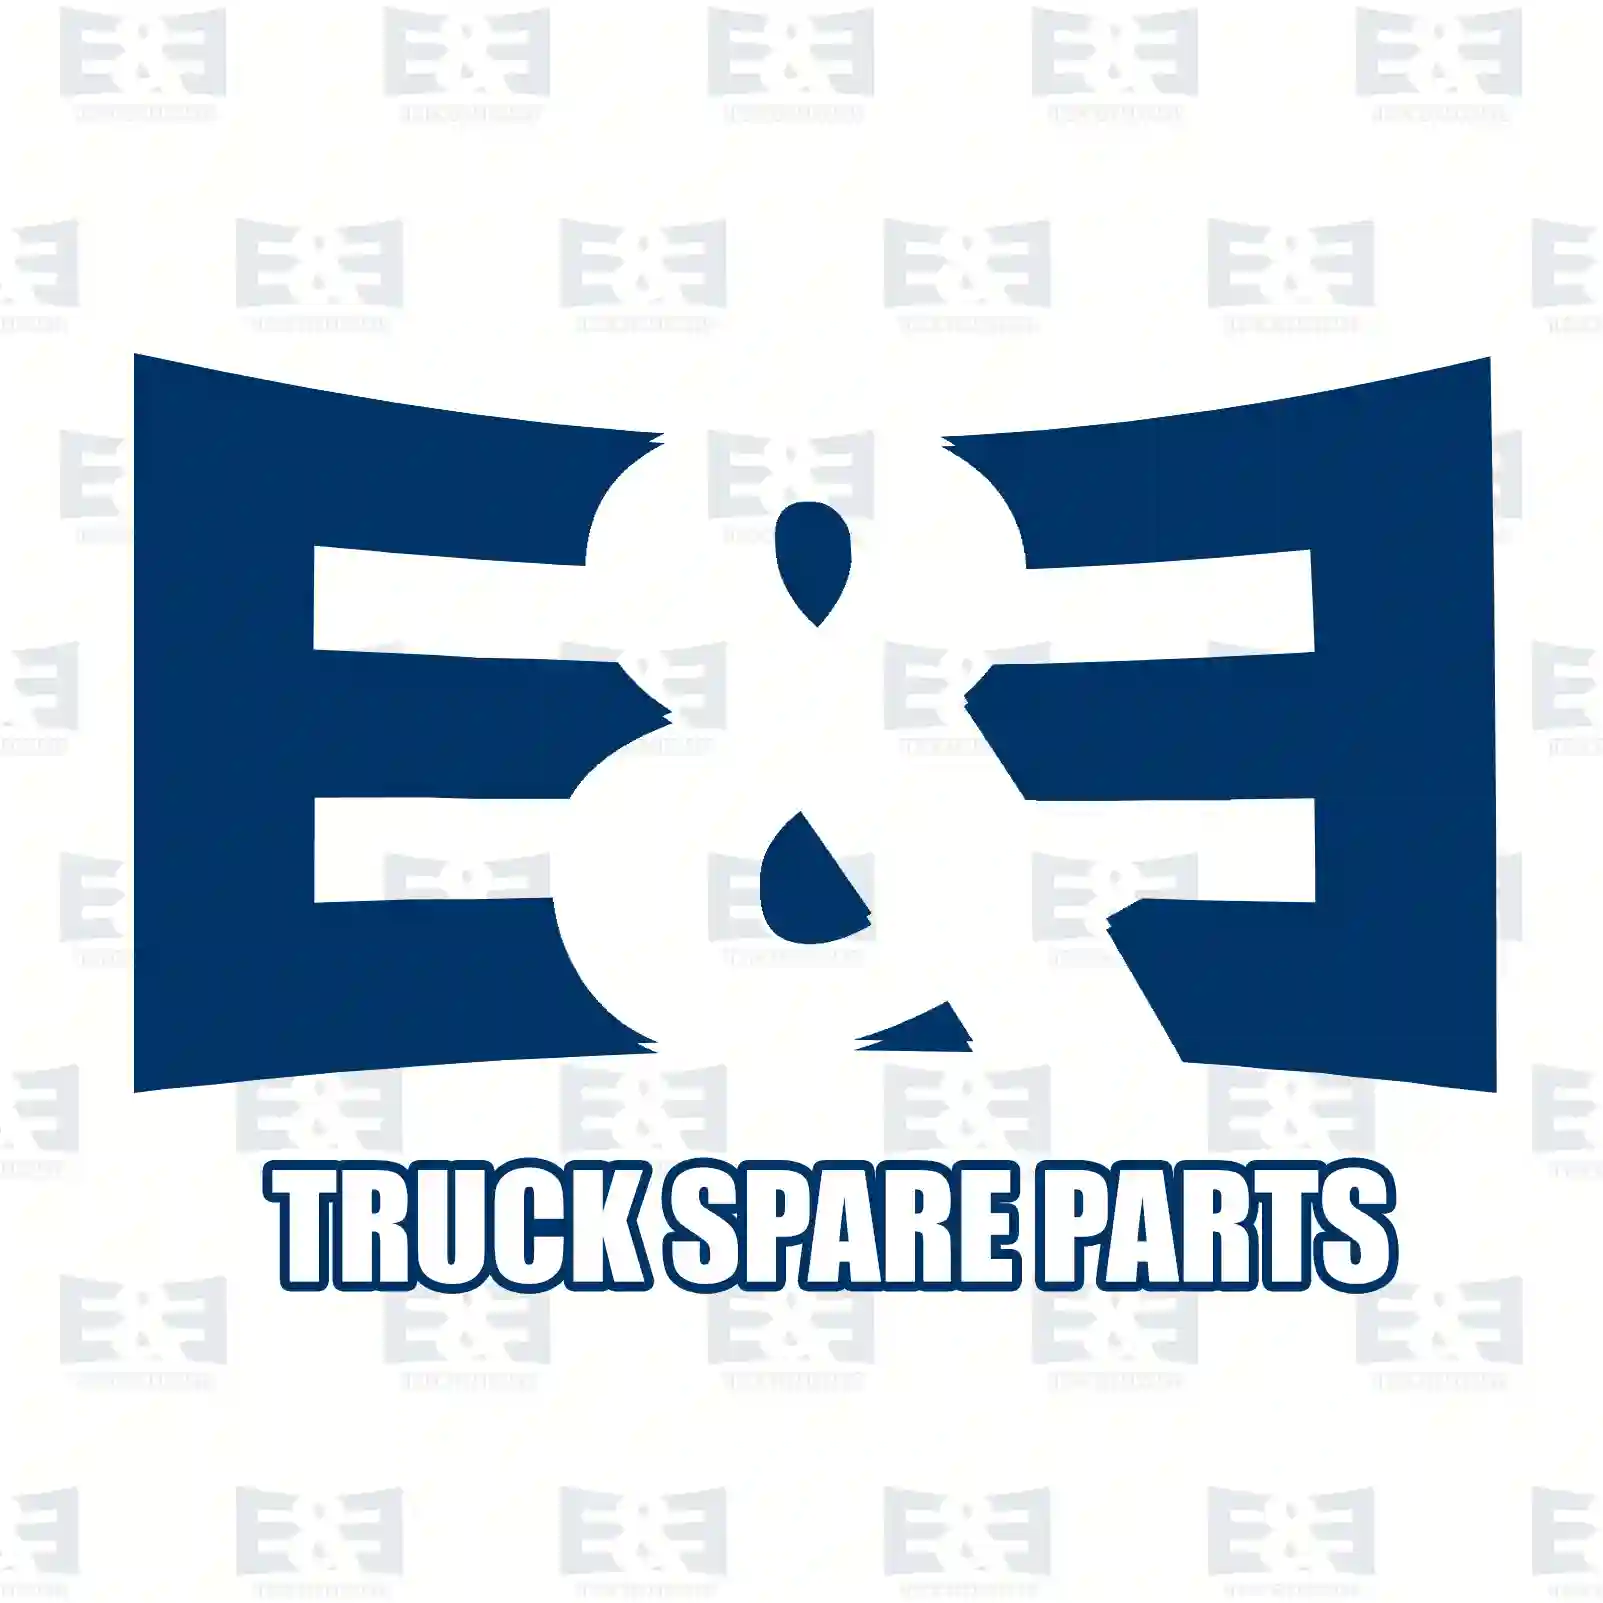 Stabilizer stay, 2E2283639, 3736028, F65A-5K483-CC, , ||  2E2283639 E&E Truck Spare Parts | Truck Spare Parts, Auotomotive Spare Parts Stabilizer stay, 2E2283639, 3736028, F65A-5K483-CC, , ||  2E2283639 E&E Truck Spare Parts | Truck Spare Parts, Auotomotive Spare Parts